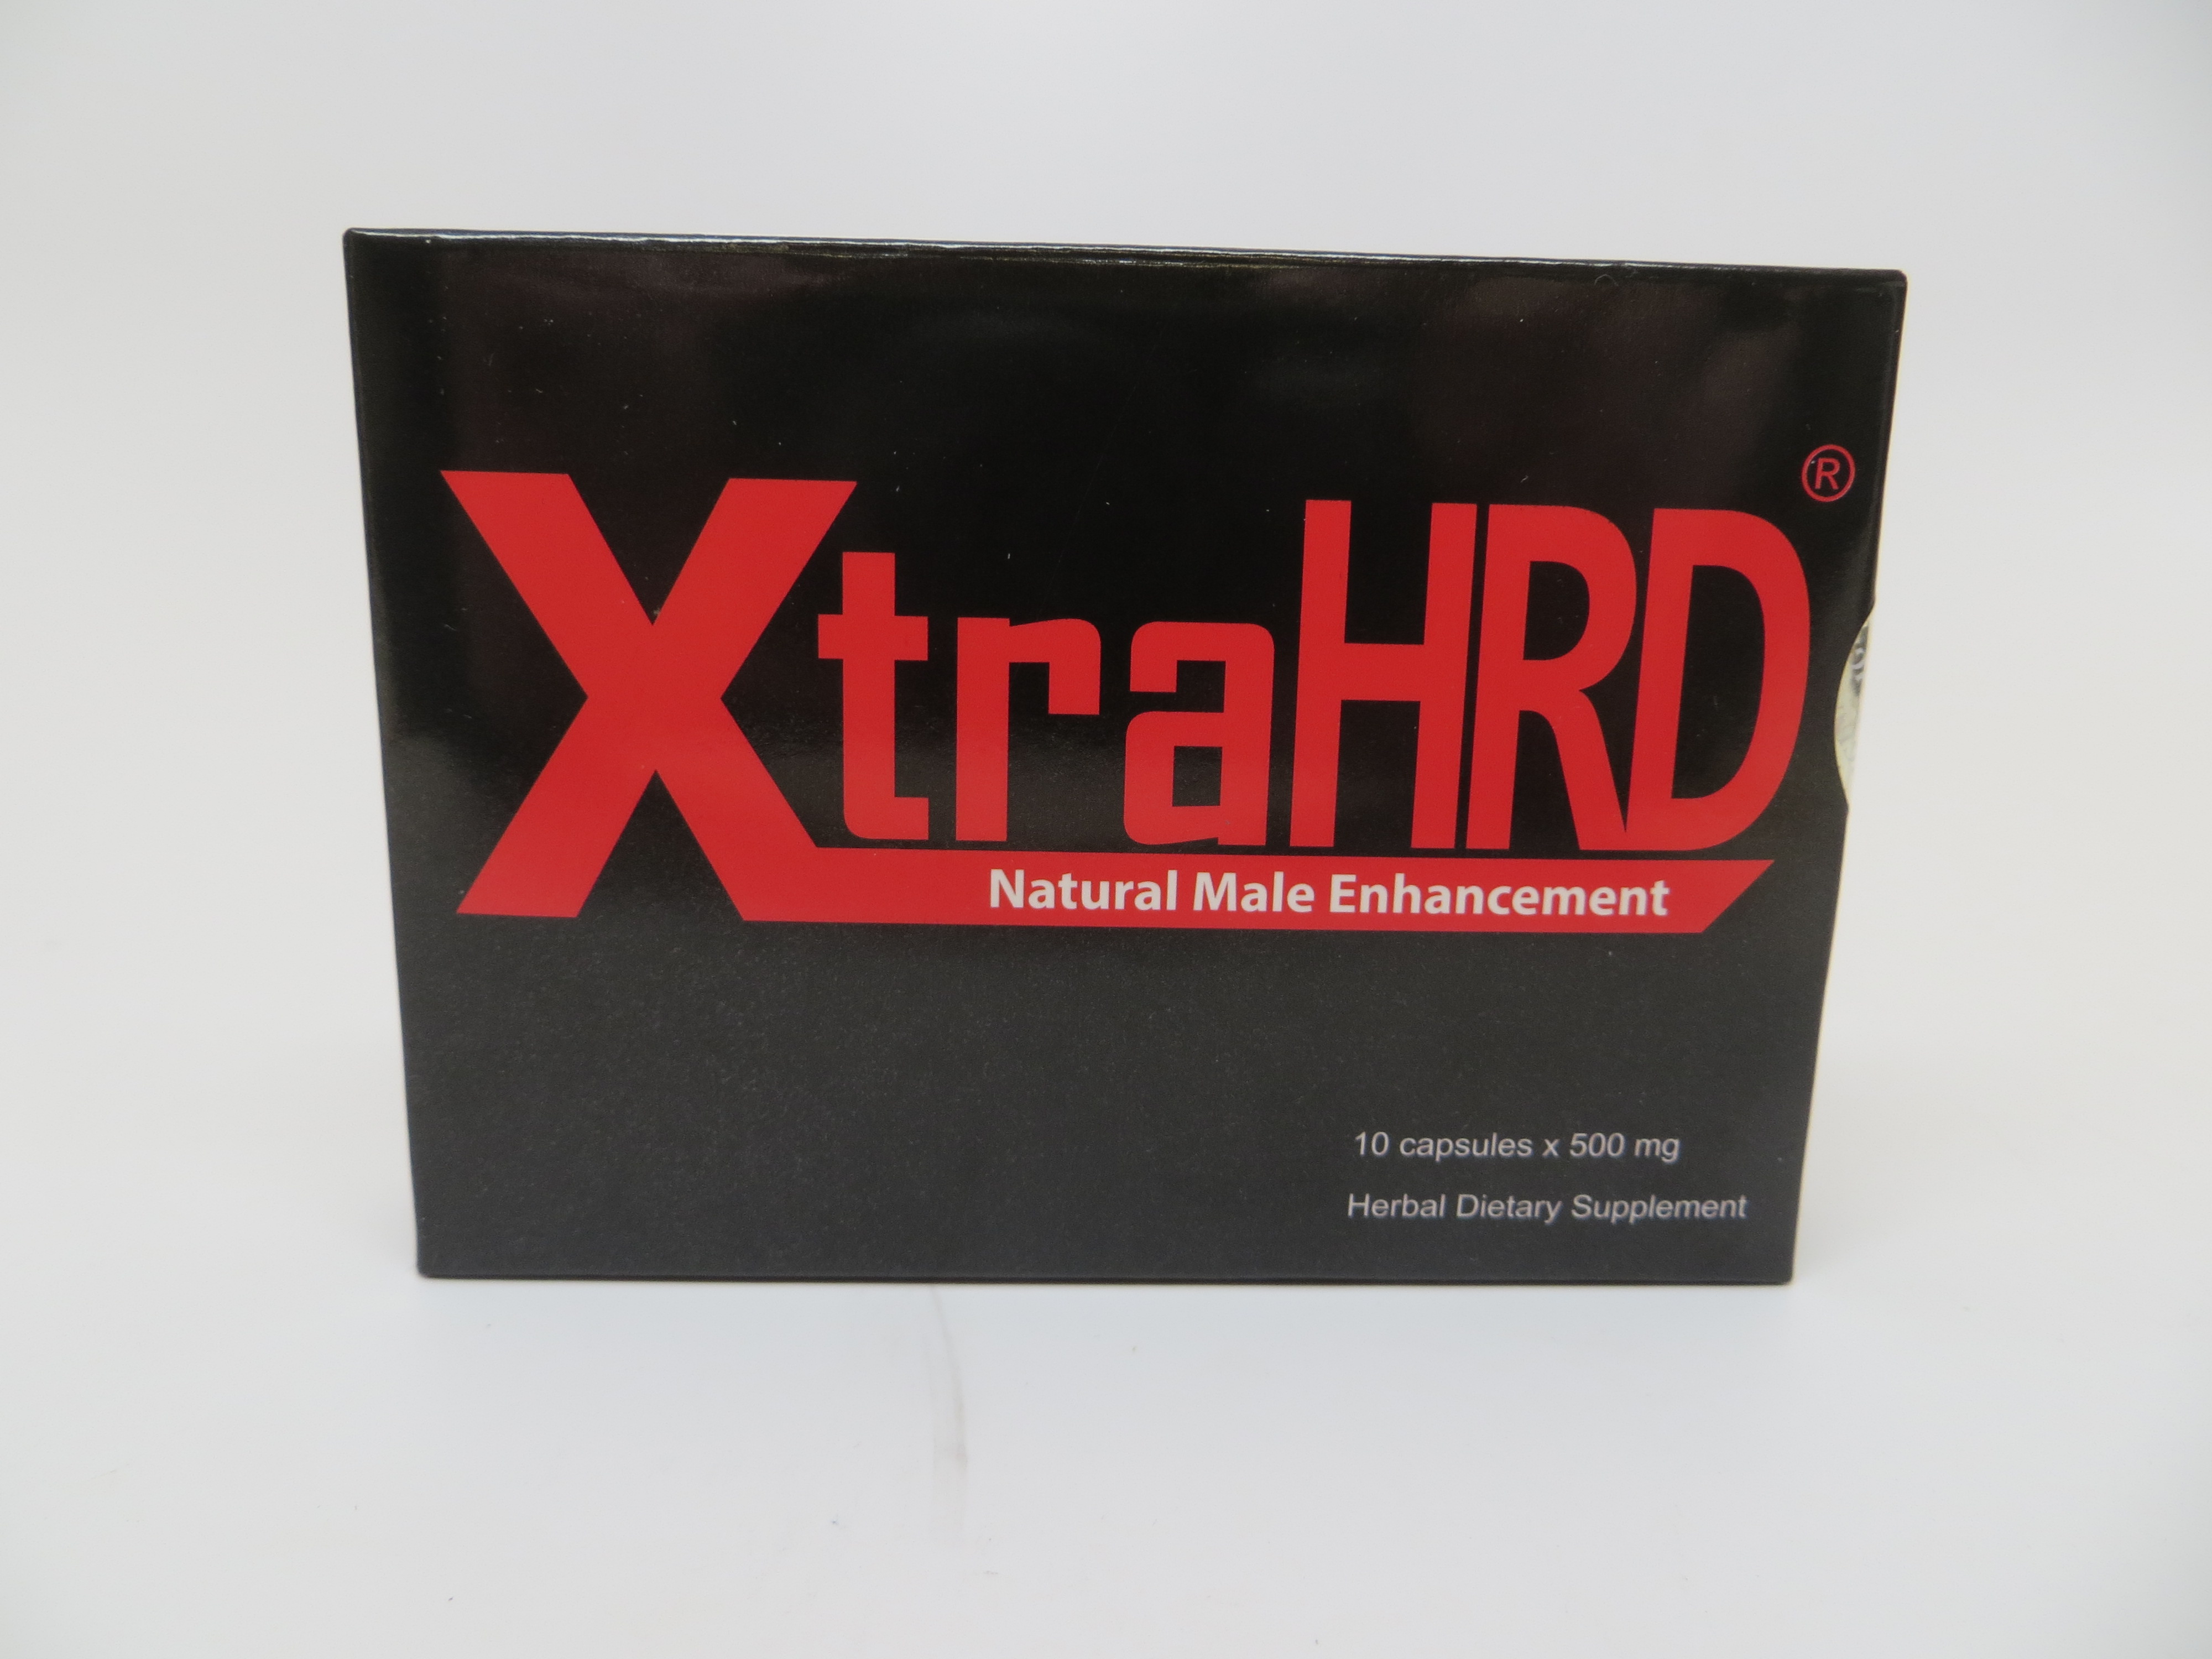 Billede af det ulovlige produkt: XtraHRD